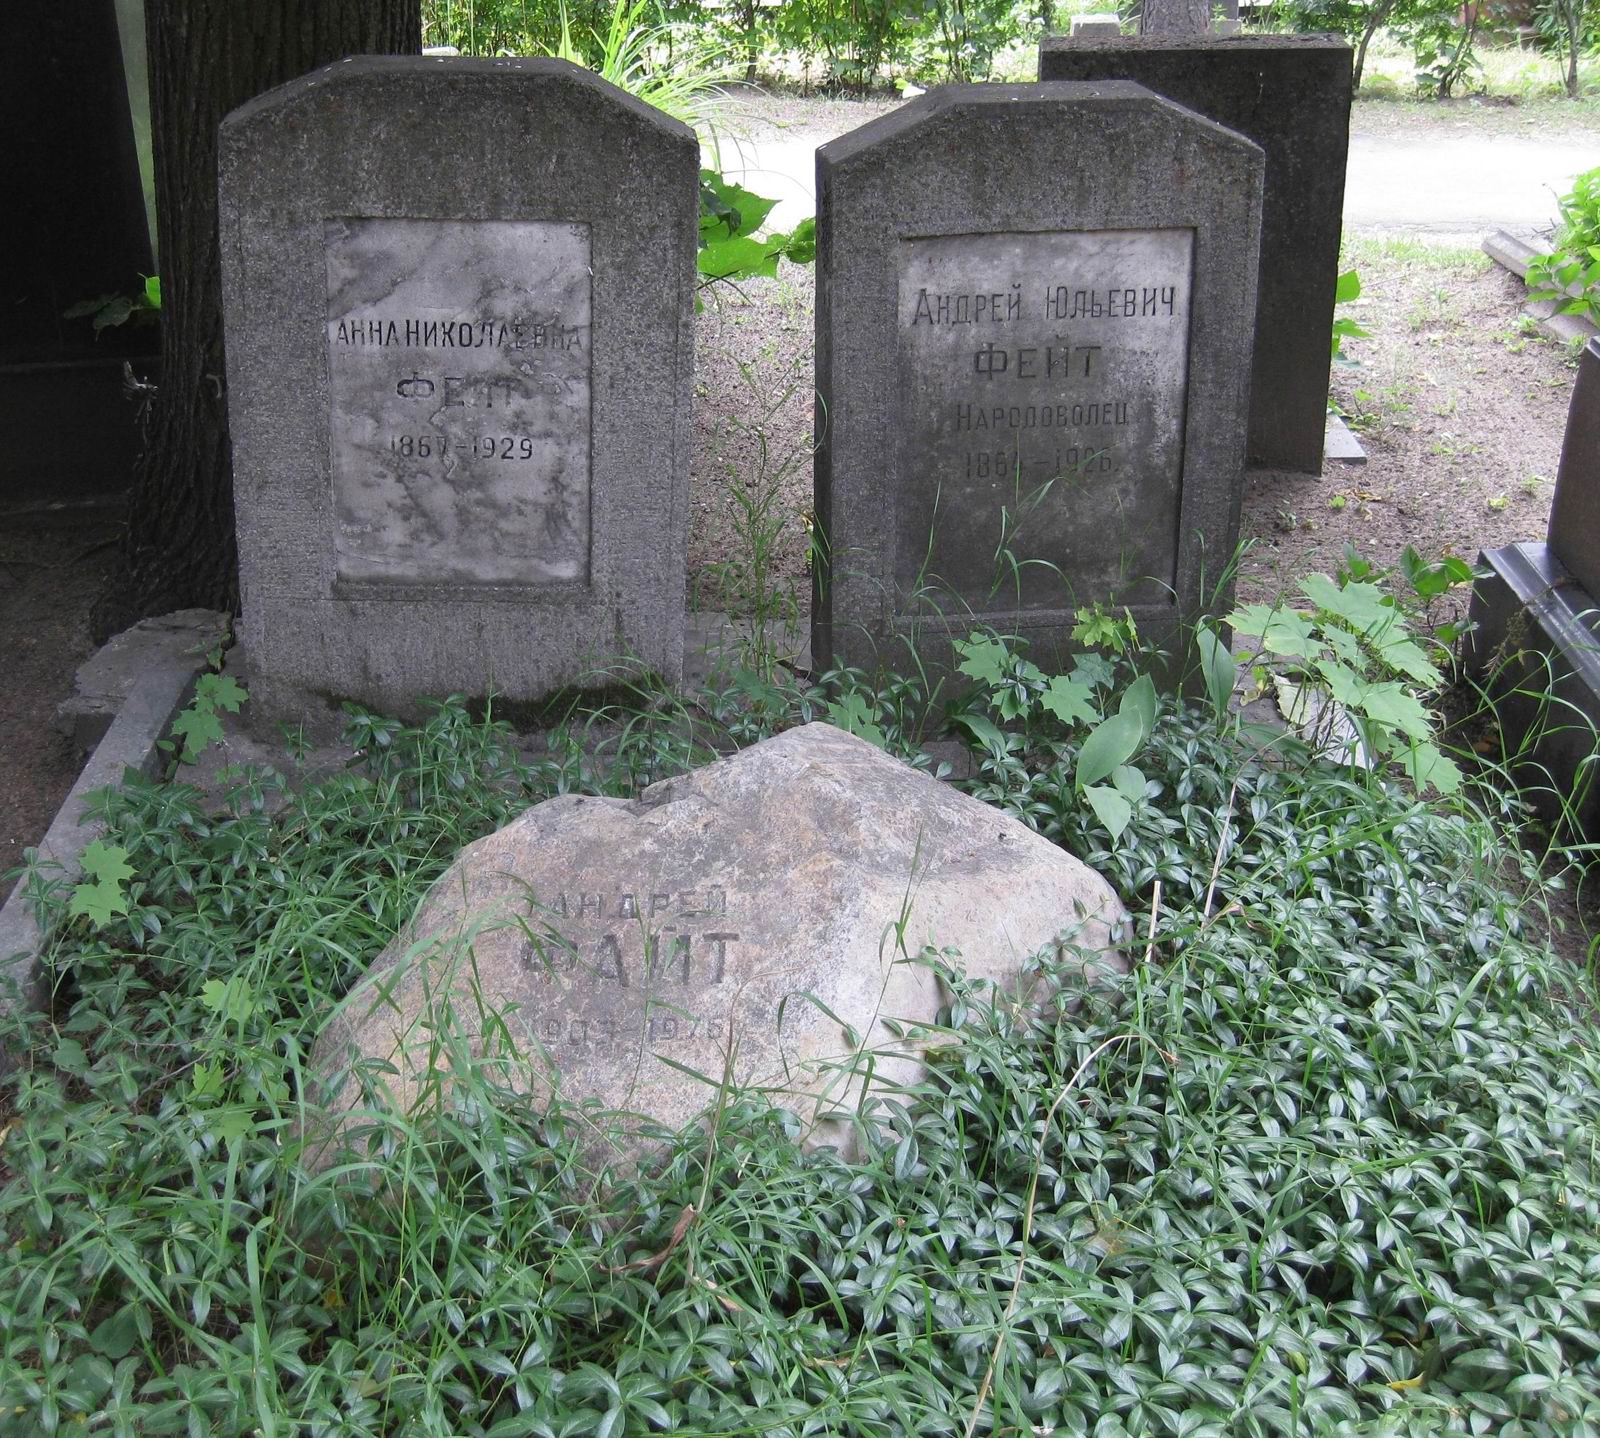 Памятник на могиле Фейта А.Ю. (1864–1926), на Новодевичьем кладбище (1–45–52). Нажмите левую кнопку мыши, чтобы увидеть фрагмент памятника.